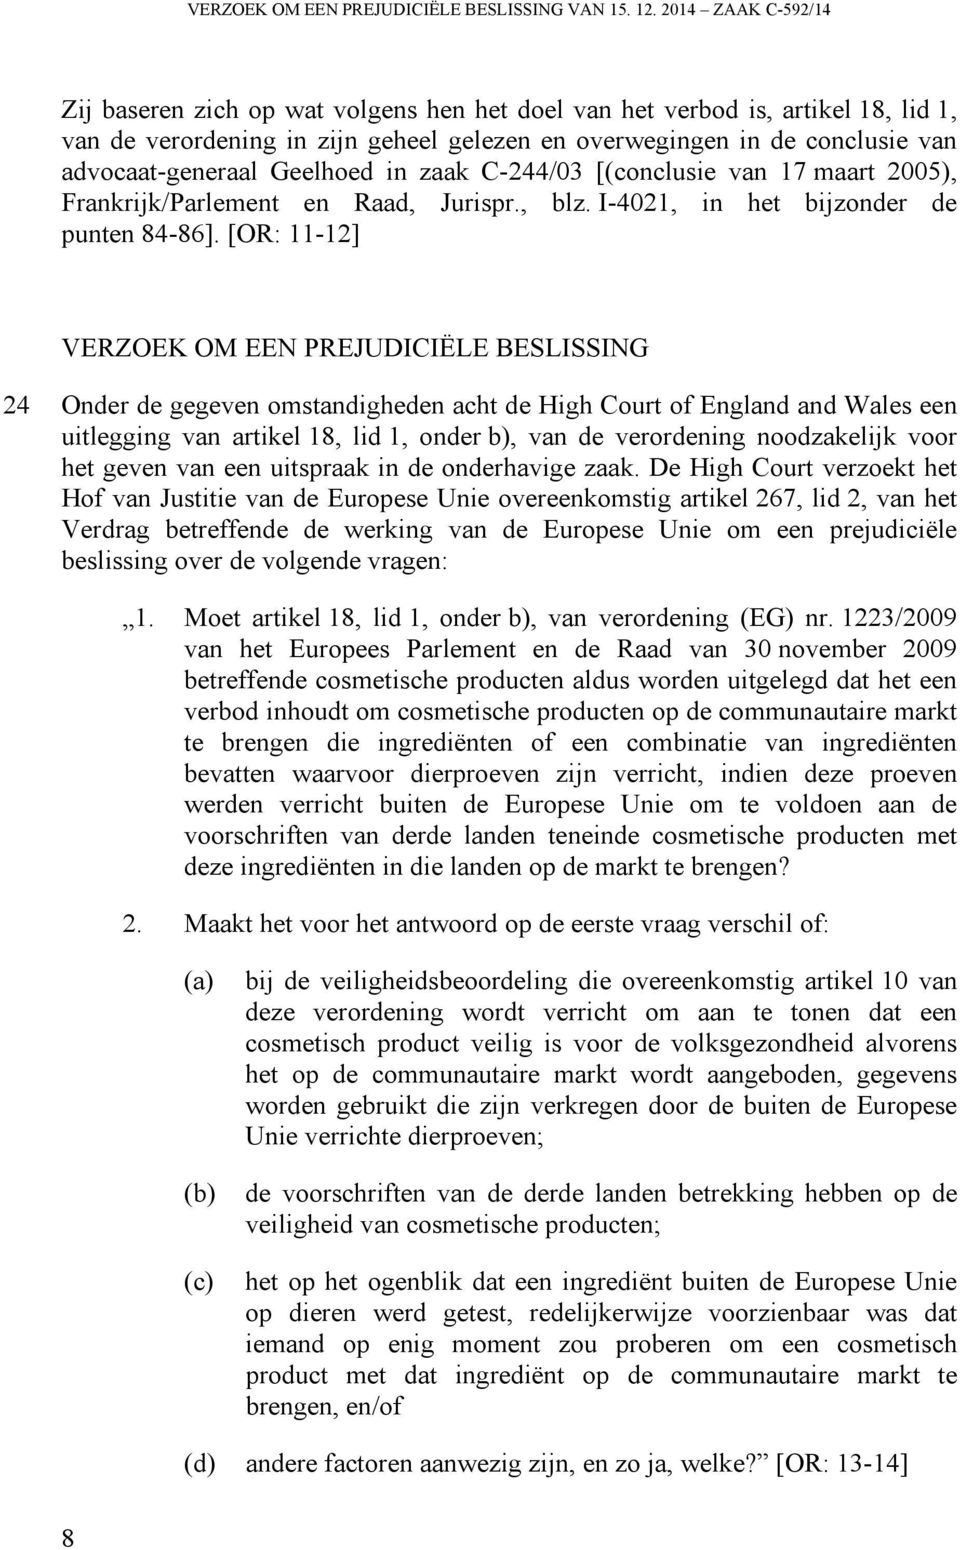 Geelhoed in zaak C-244/03 [(conclusie van 17 maart 2005), Frankrijk/Parlement en Raad, Jurispr., blz. I-4021, in het bijzonder de punten 84-86].